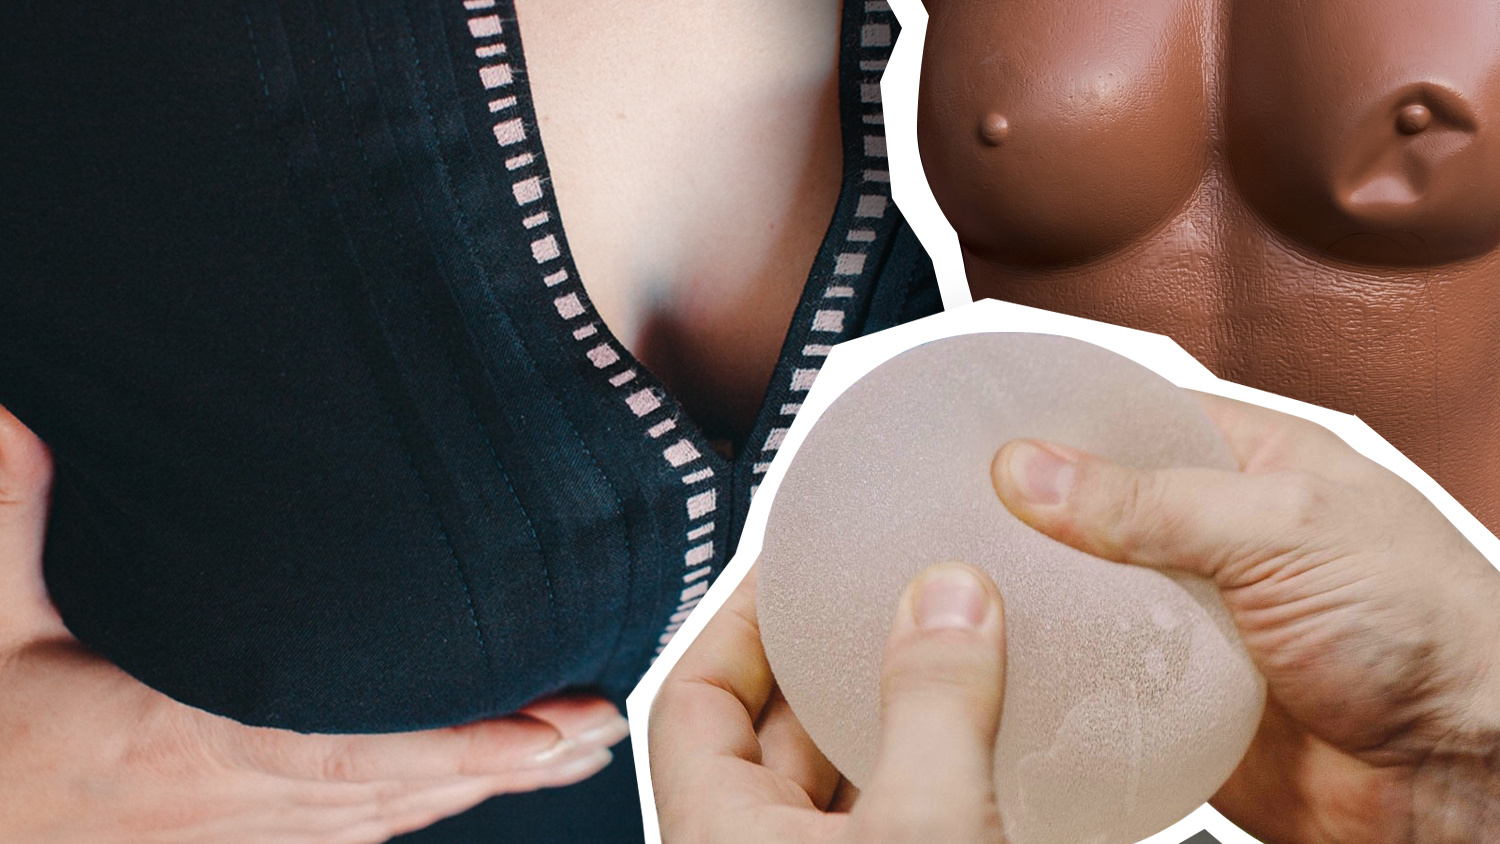 Виды грудных имплантов: формы, размеры, наполнители | Маммологический Центр